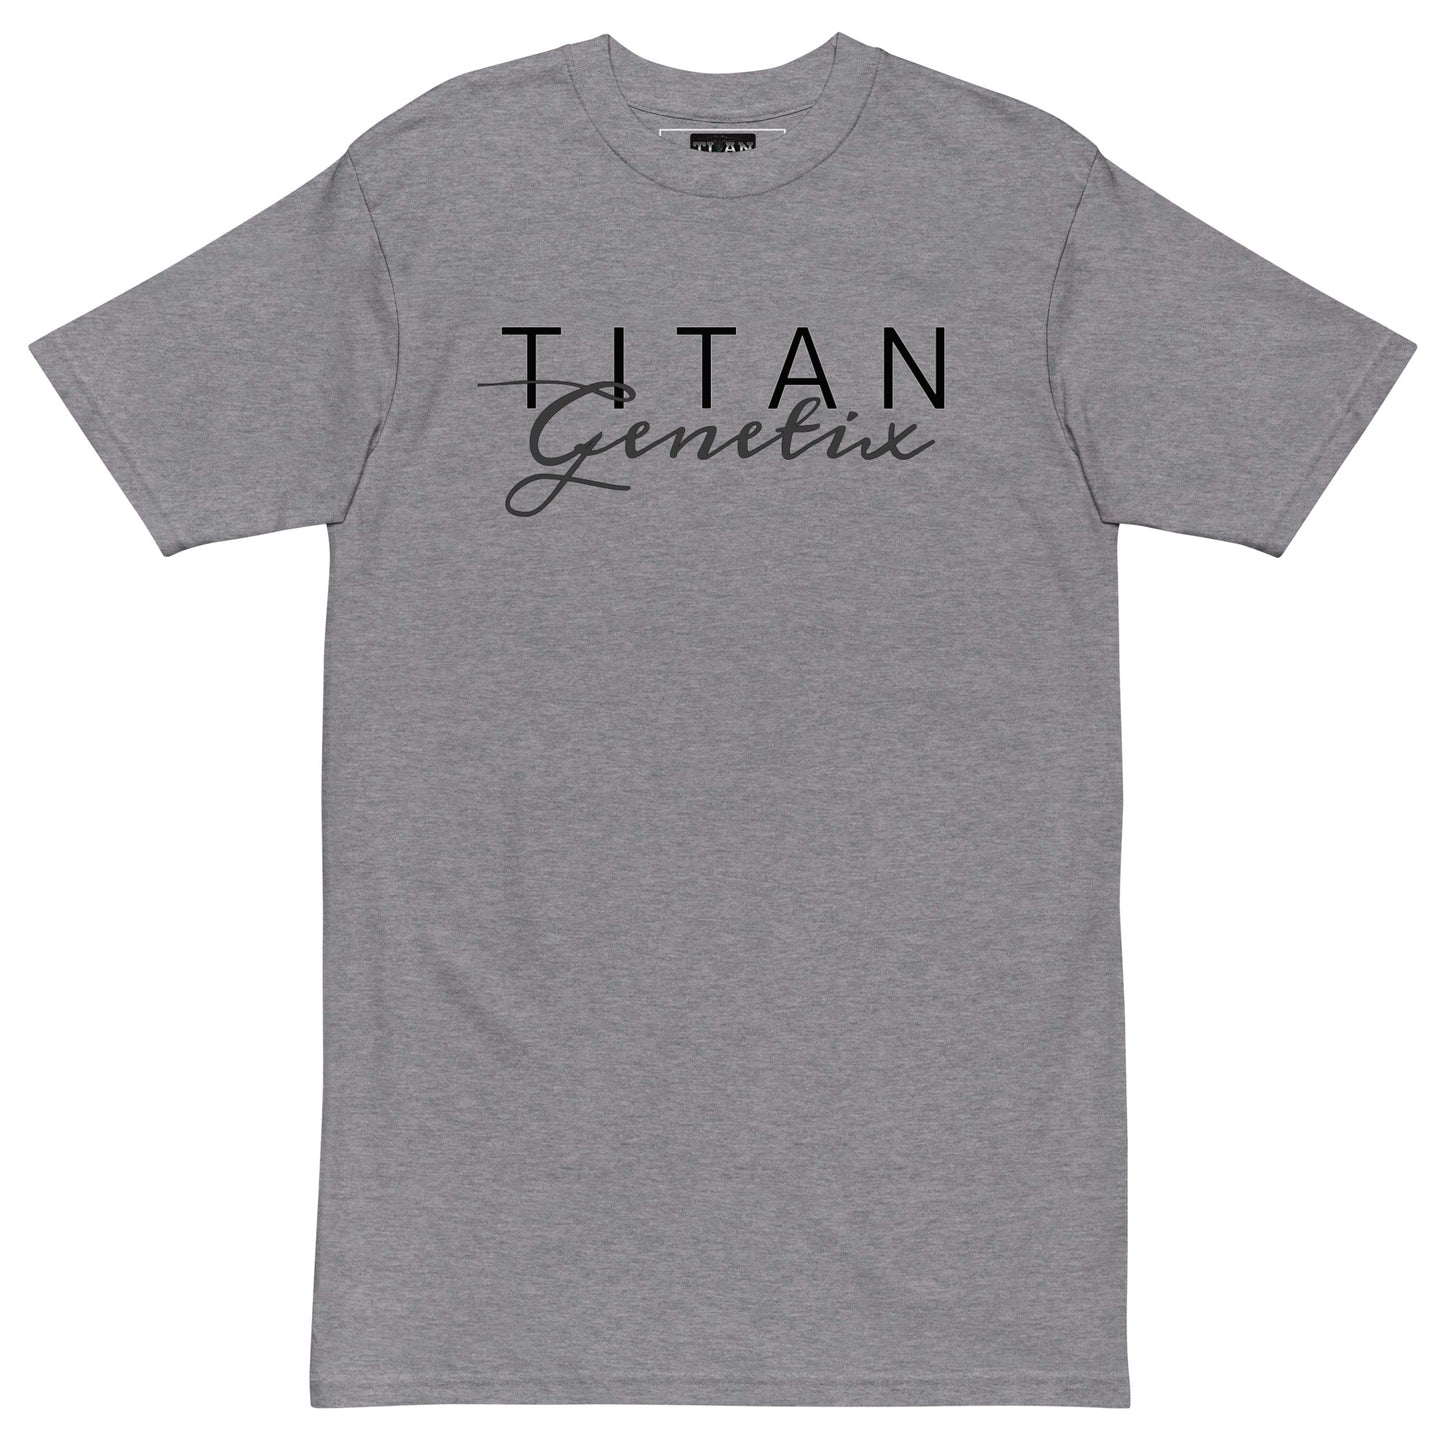 Titan Genetix Signature - Men’s Premium Tee